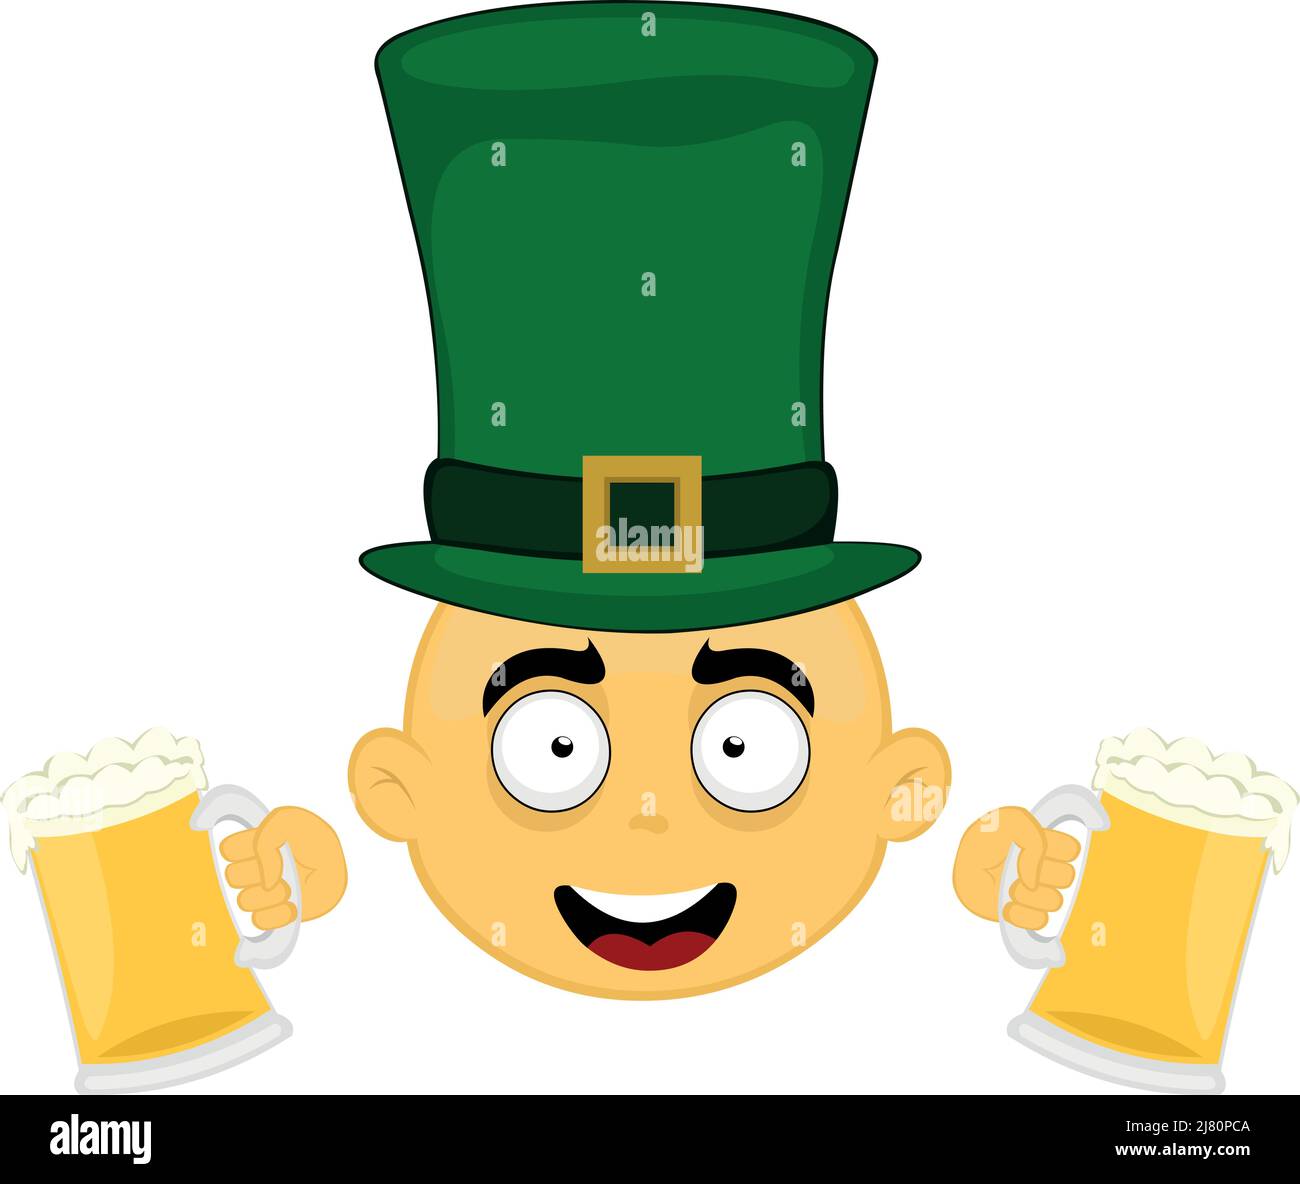 Illustration vectorielle du visage d'un personnage de dessin animé jaune, avec un chapeau d'élan sur sa tête et deux verres de bière dans ses mains Illustration de Vecteur